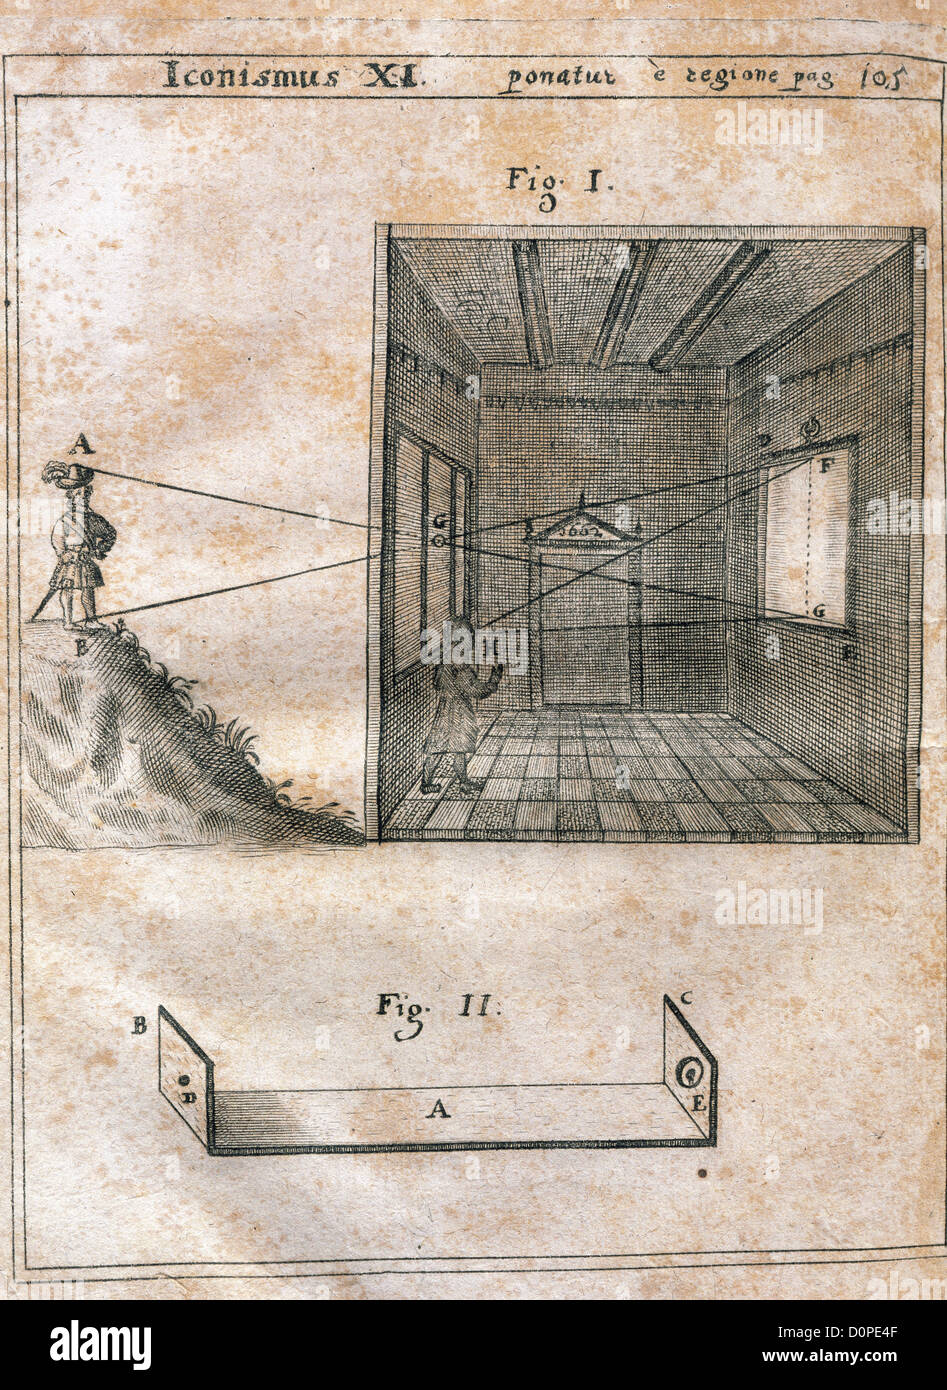 Geschichte der Fotografie. Die Kamera ist unklar. Magia Naturalis Sive de Miraculis Rerum Naturalium (1558) von Giambattista della Porta. Stockfoto